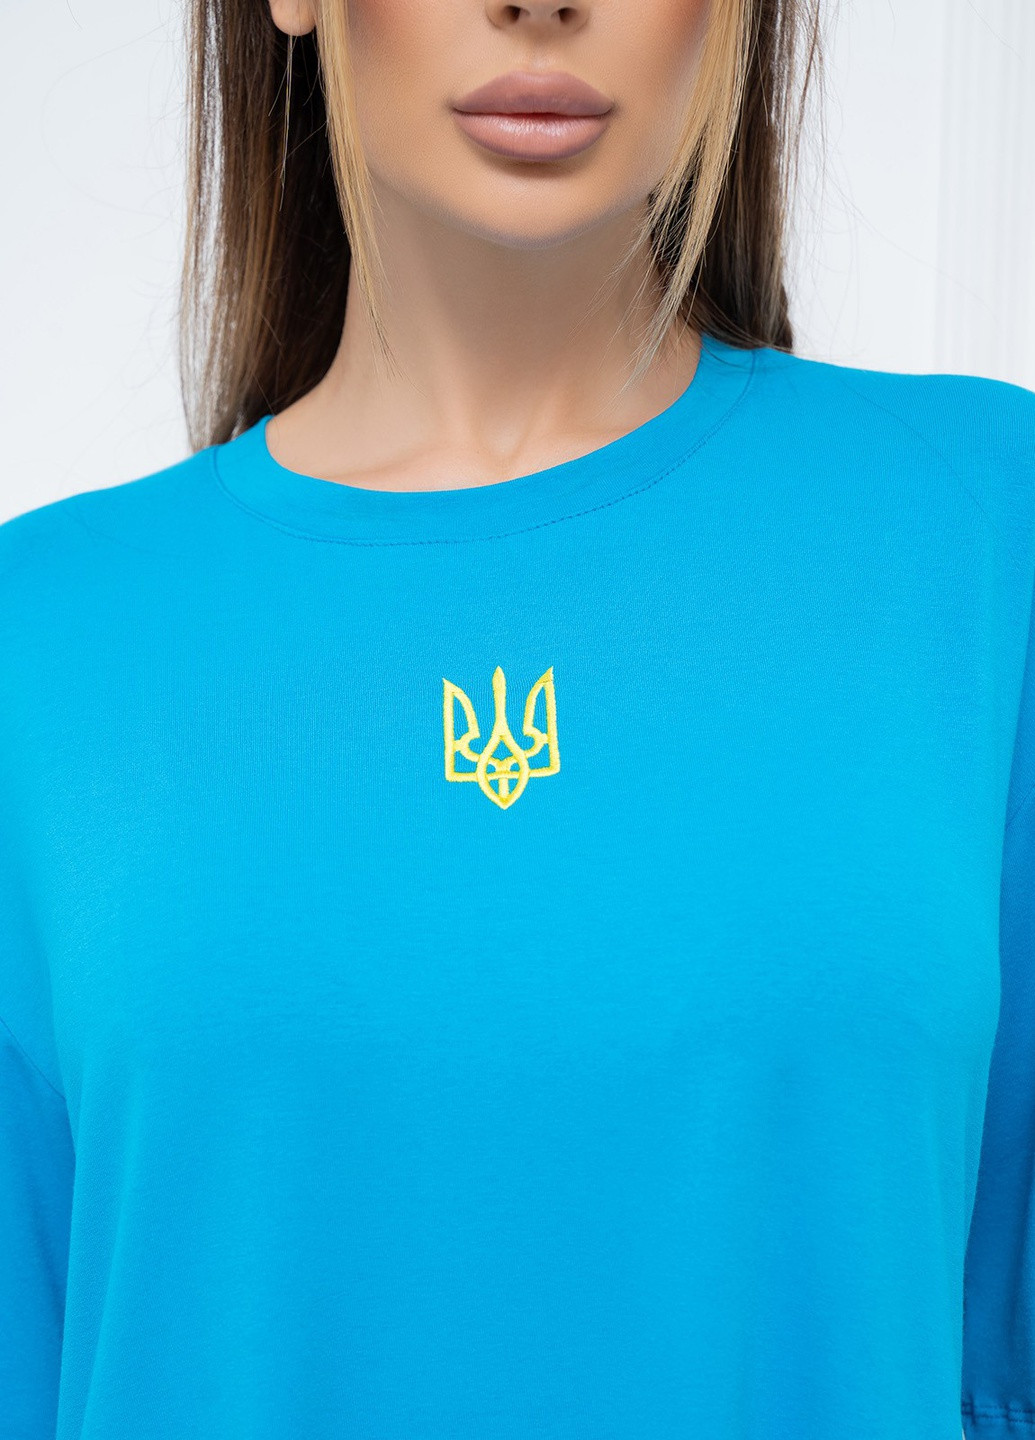 Голубая летняя футболка женская с коротким рукавом ISSA PLUS 13930